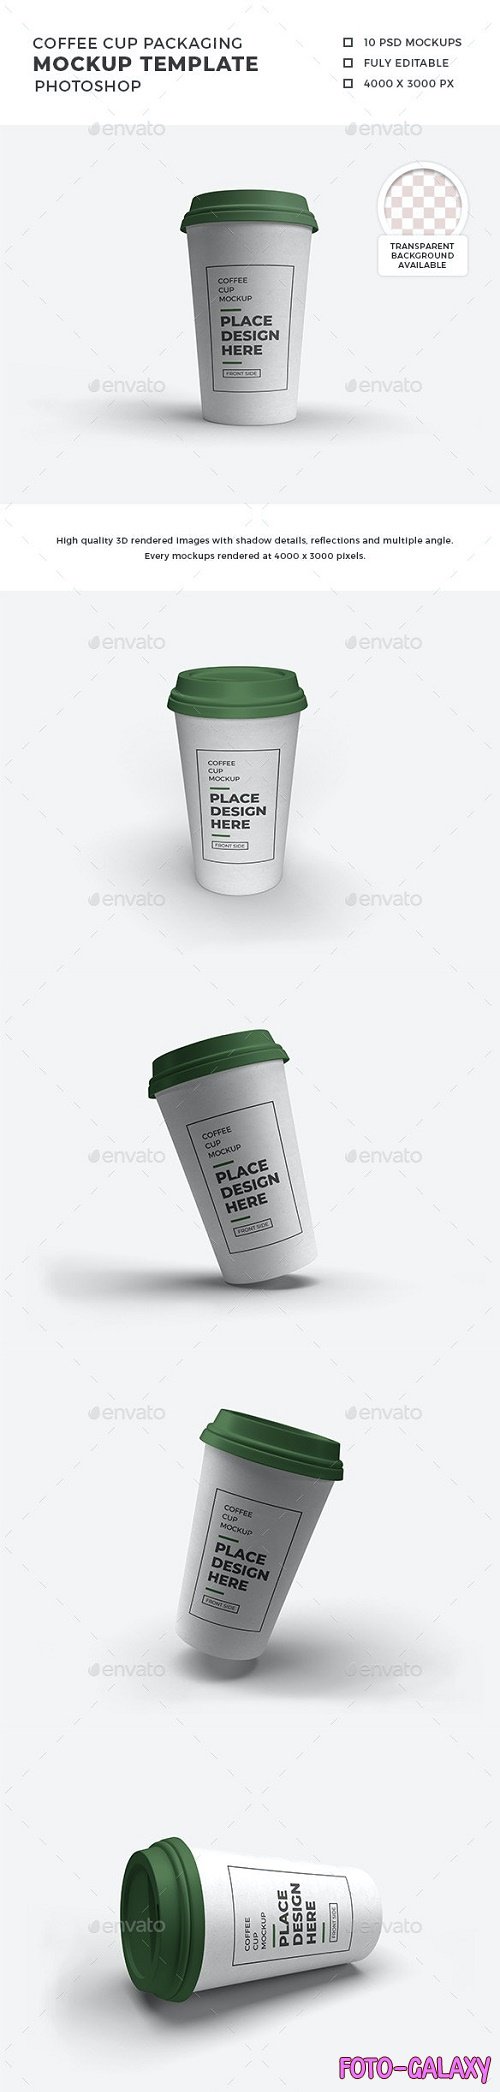 Coffee Cup Packaging Mockup Template Set - 29925155